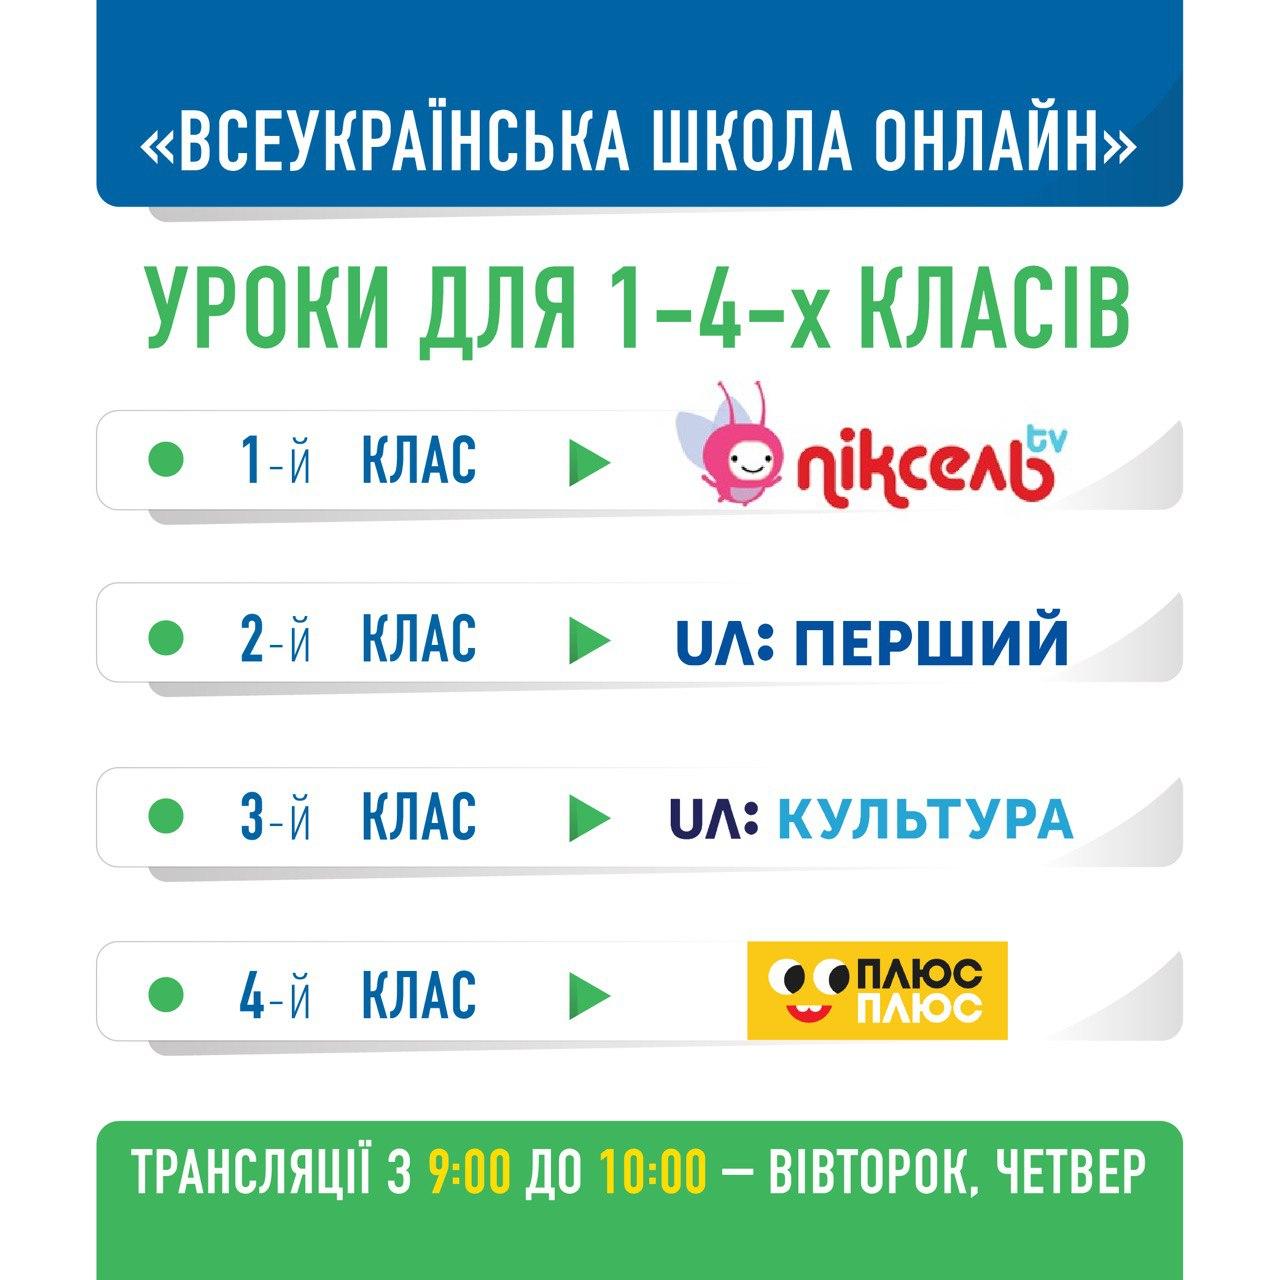 Всеукраинская школа онлайн, расписание уроков для 1-4 классов